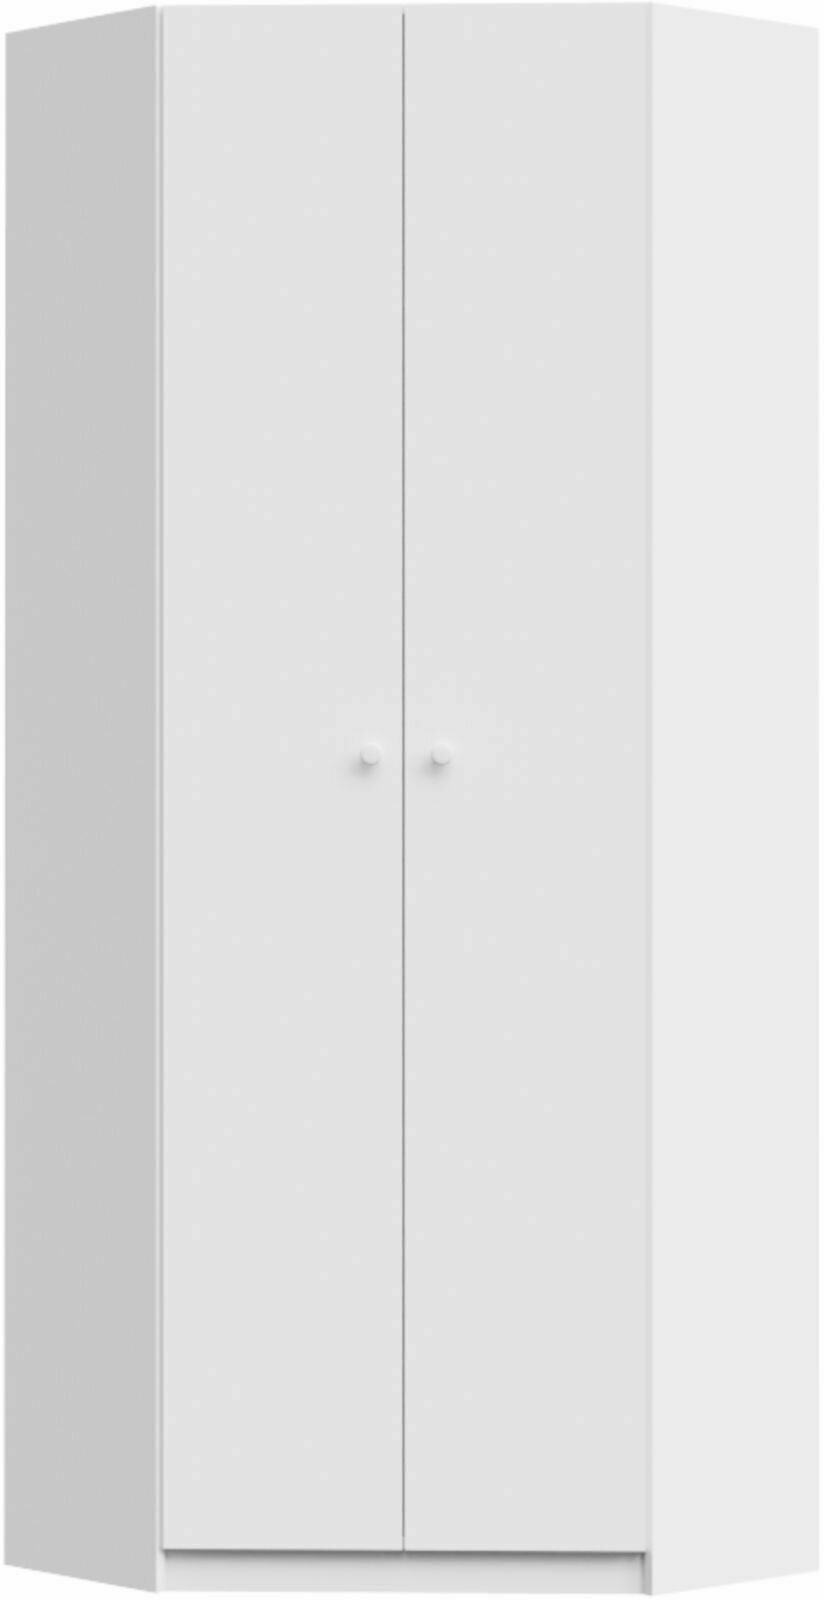 Шкаф распашной угловой белого цвета двухдверный (88,4 Х 240 Х 88,4 Х 42 см) для прихожей, спальни, зала, гостиной. - фотография № 7